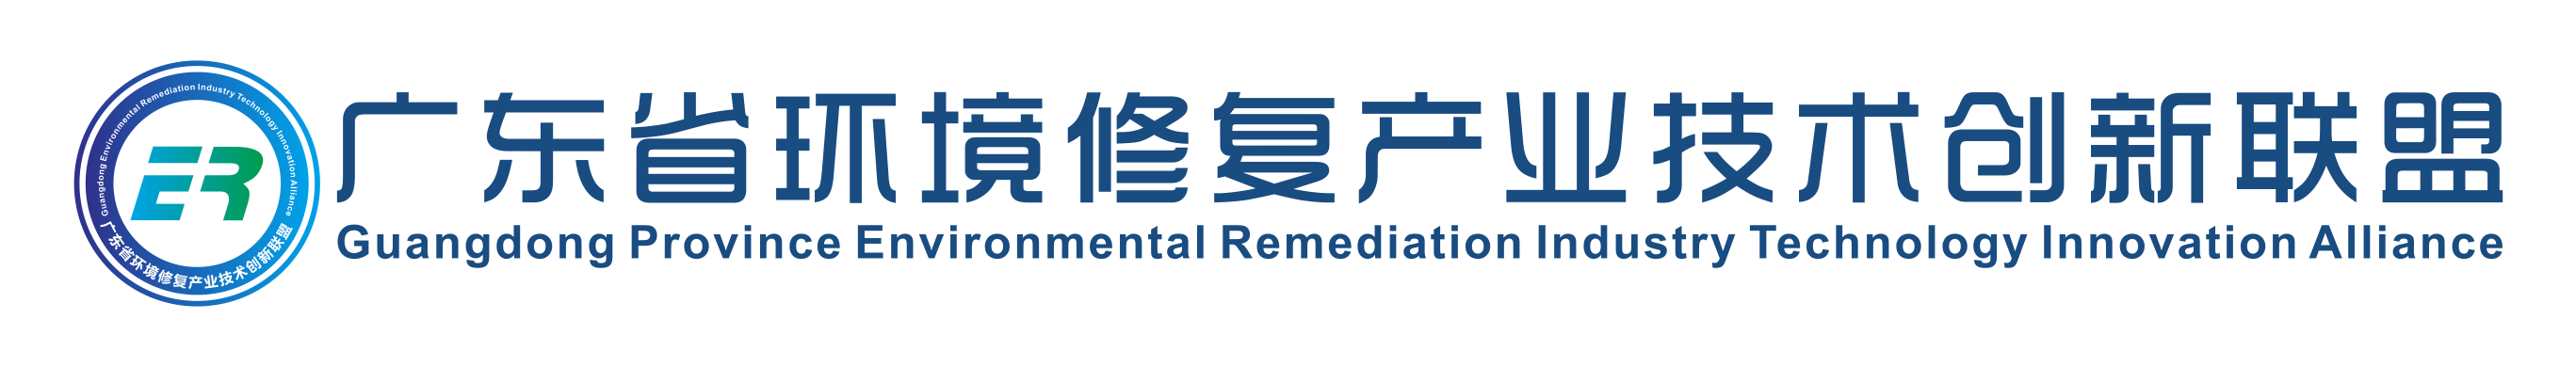 广东省环境修复产业技术创新联盟